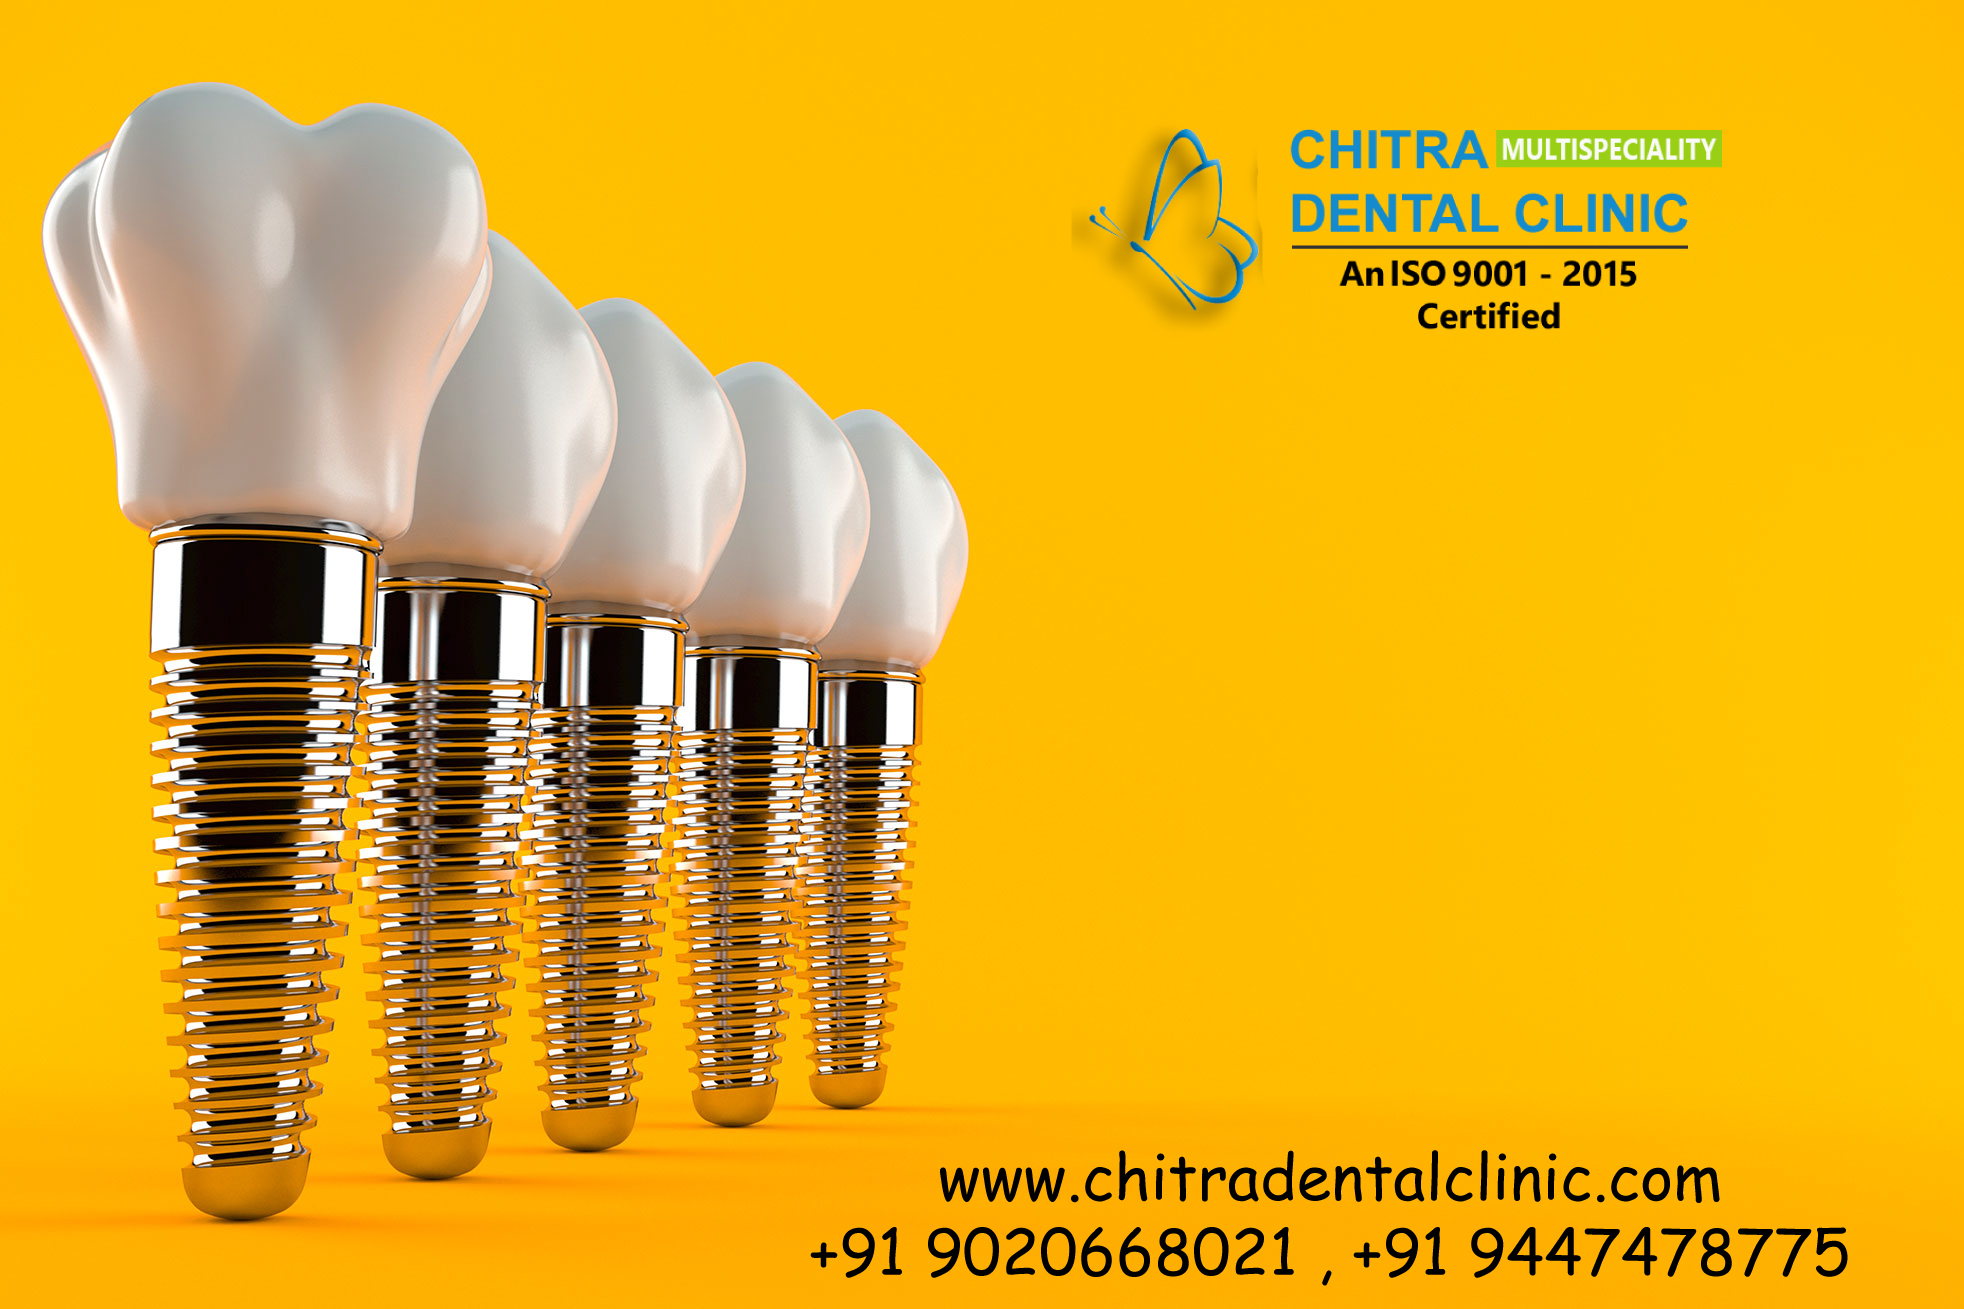 Chitra Multispeciality dental clinic